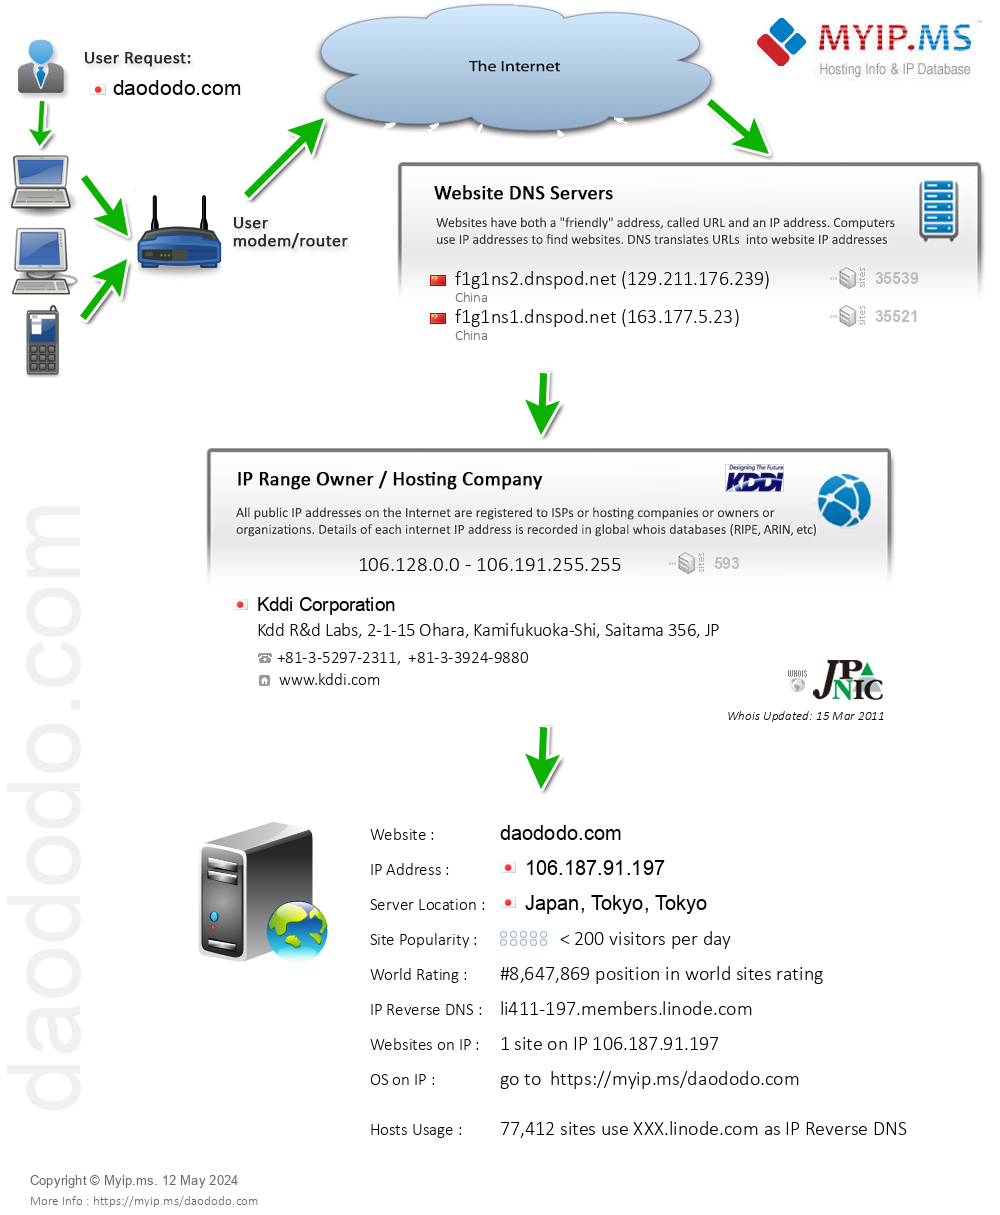 Daododo.com - Website Hosting Visual IP Diagram